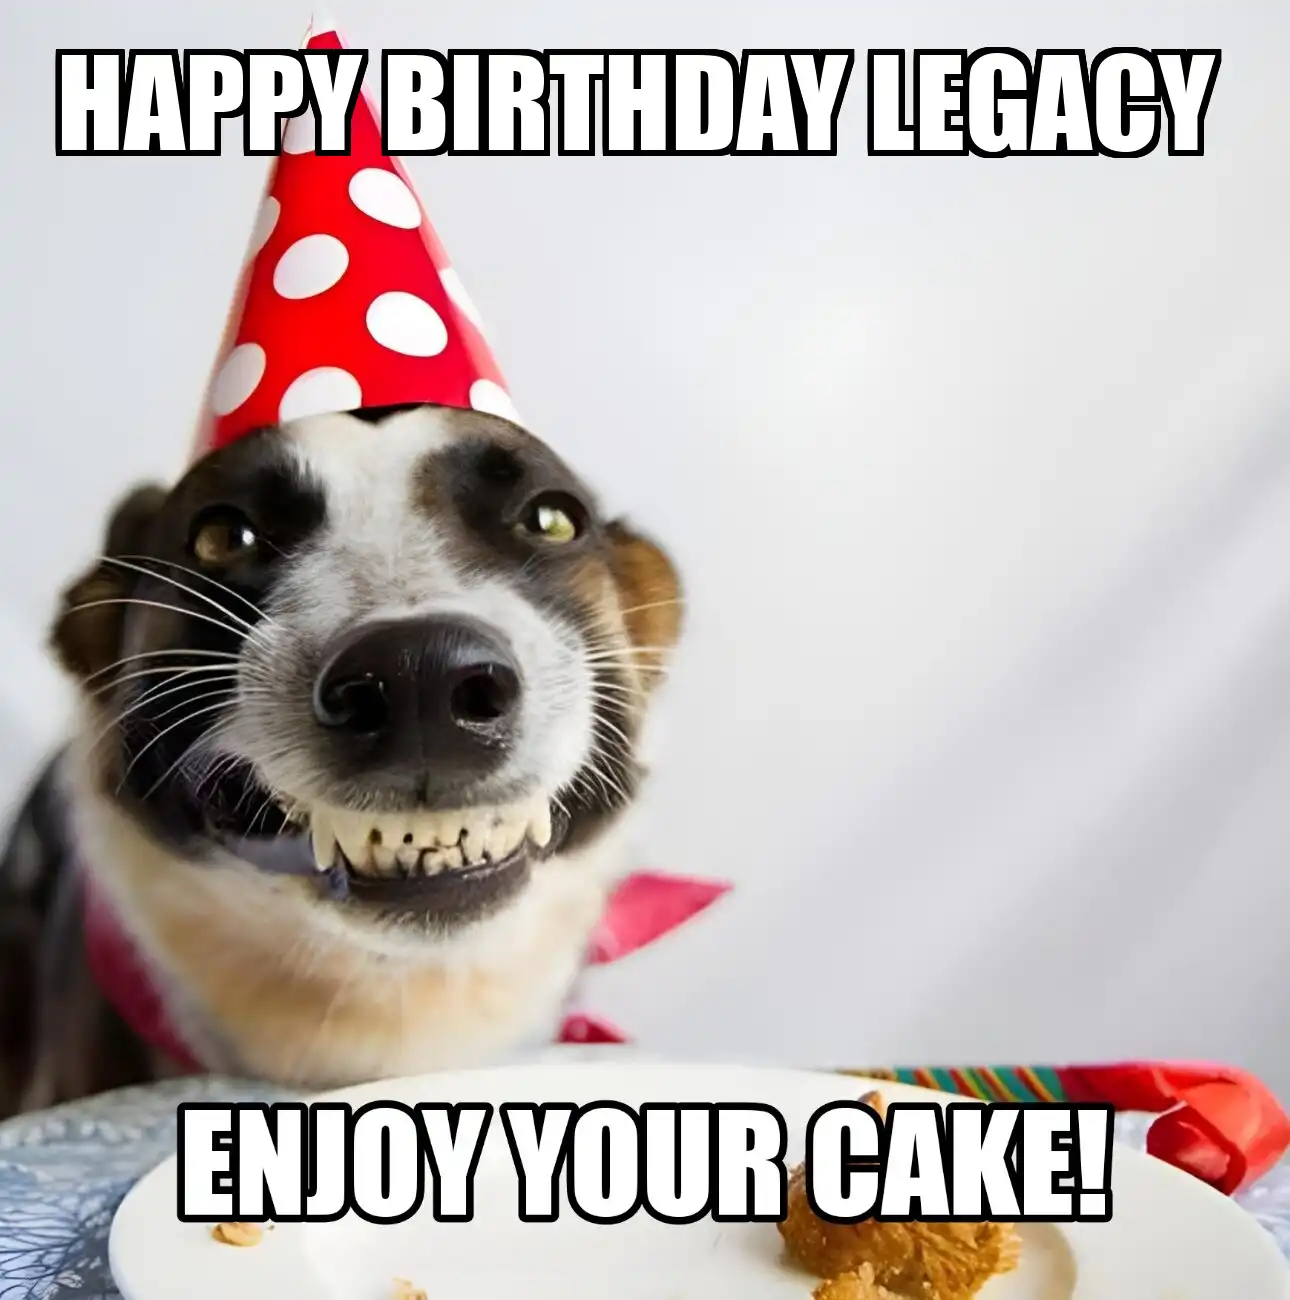 Happy Birthday Legacy Enjoy Your Cake Dog Meme